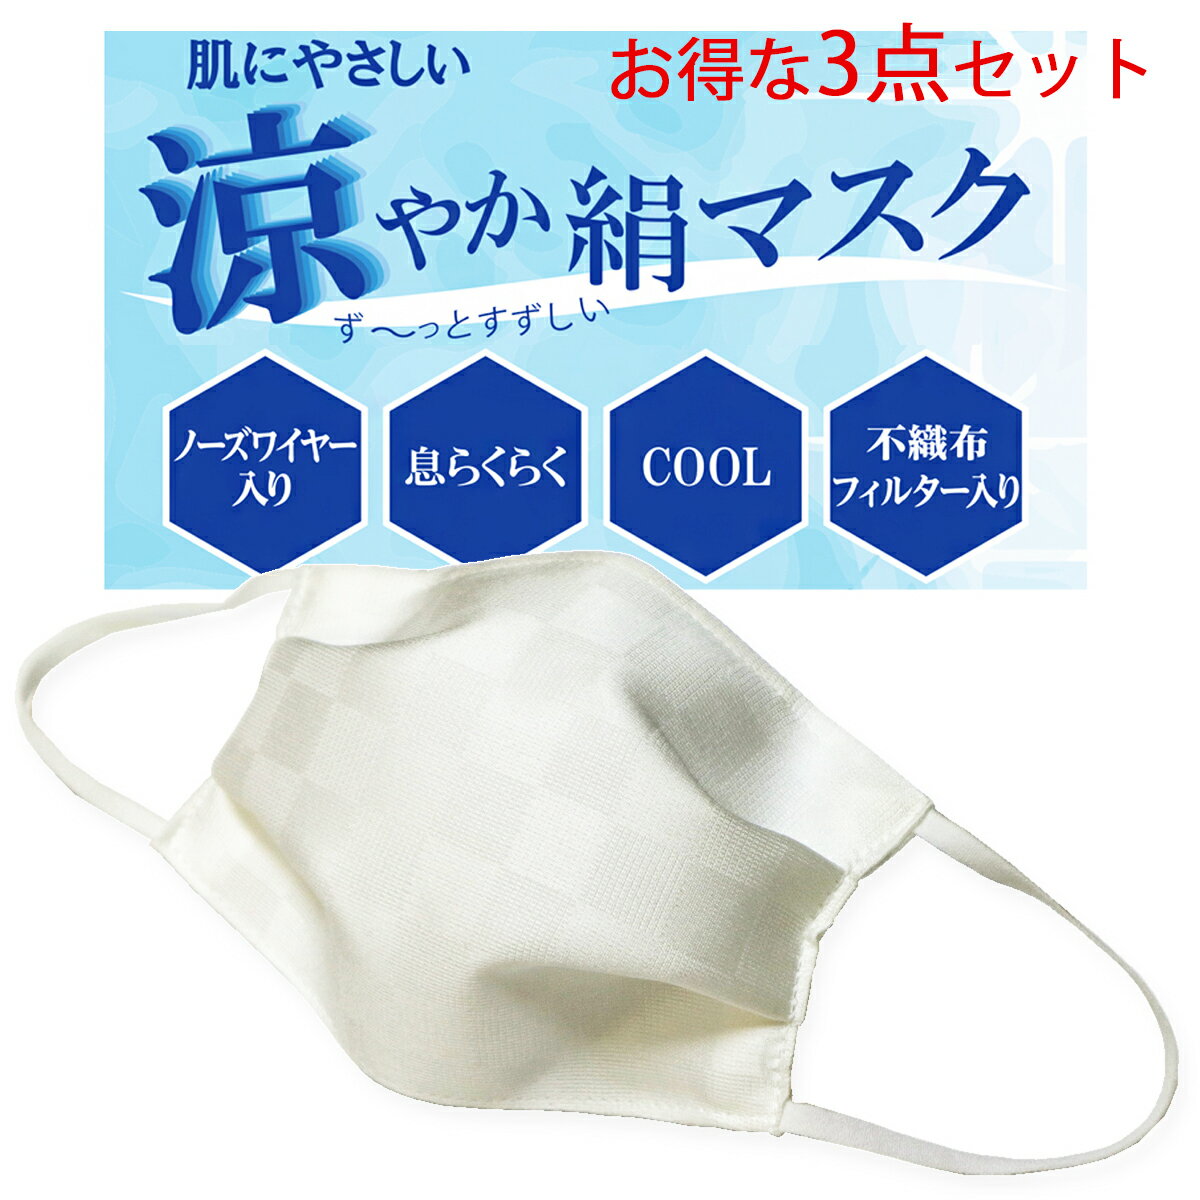 マスク 涼やか 3点セット 洗える 涼感 日本製 絹マスク 